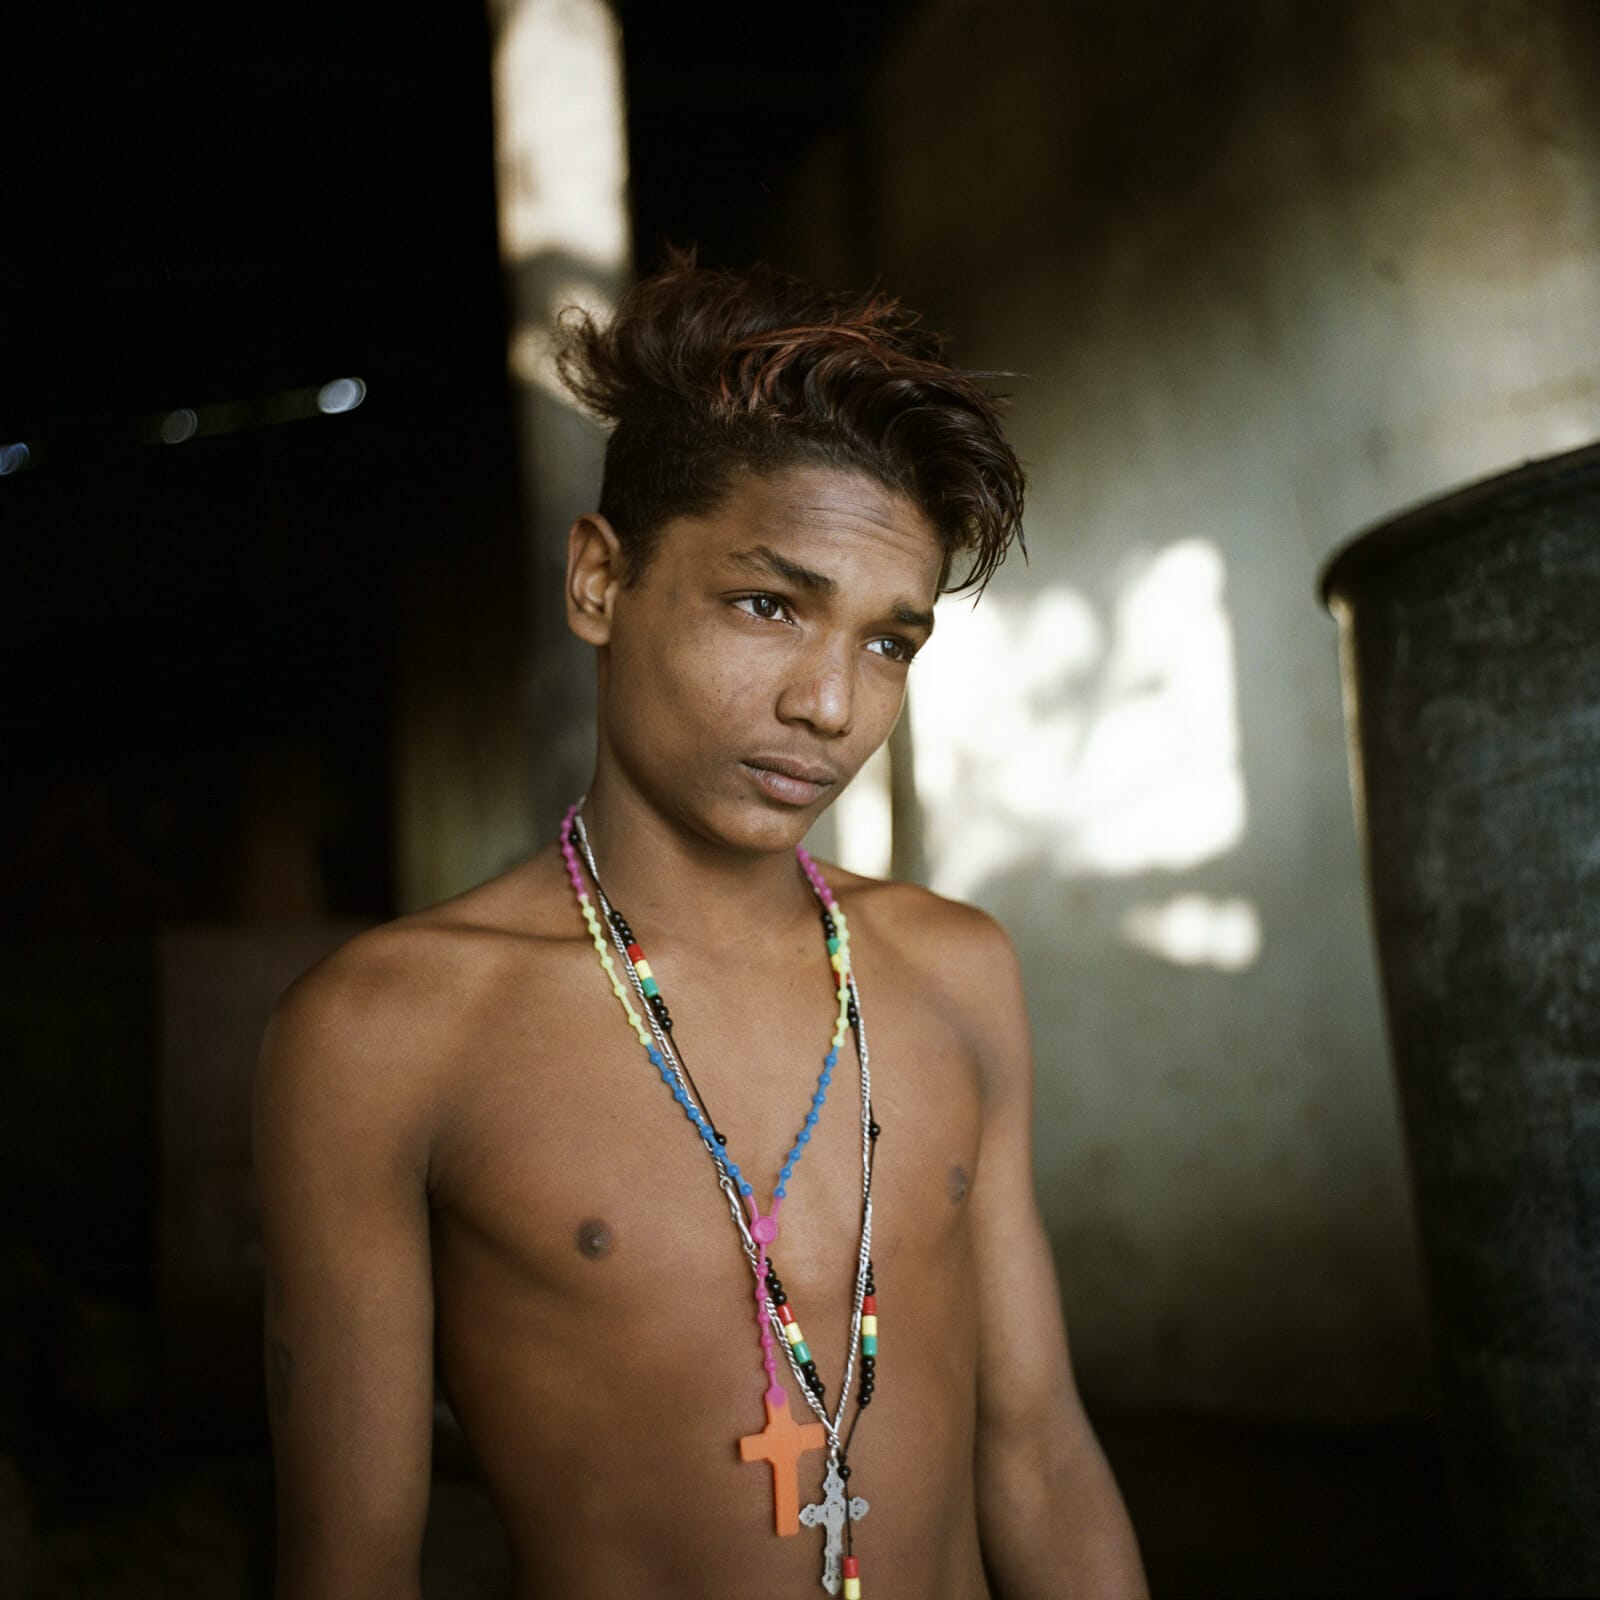 Portrait aux croix, marché aux fleurs, Calcutta